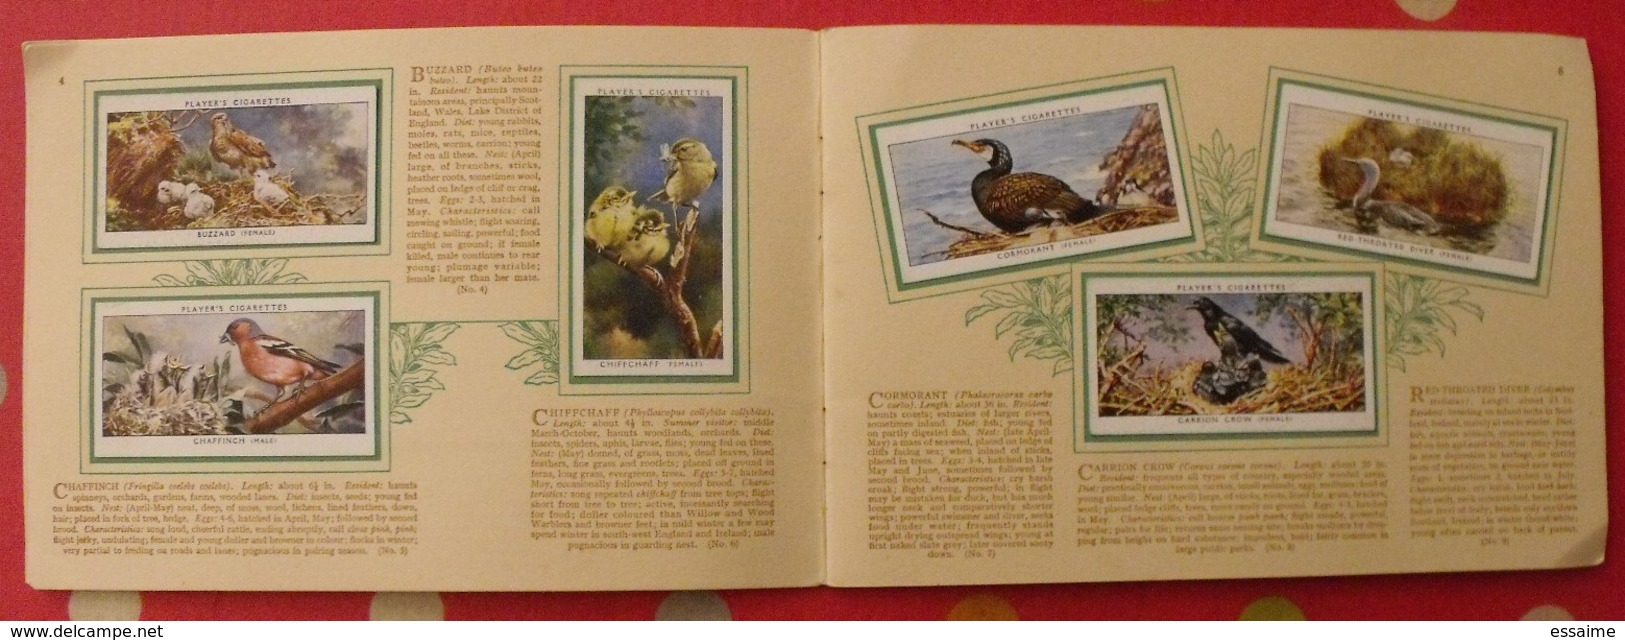 Album D'images Cigarette Pictures Card John Player. En Anglais. Birds & Young, Oiseaux & Petits. 1935. 50 Chromo - Albums & Catalogues